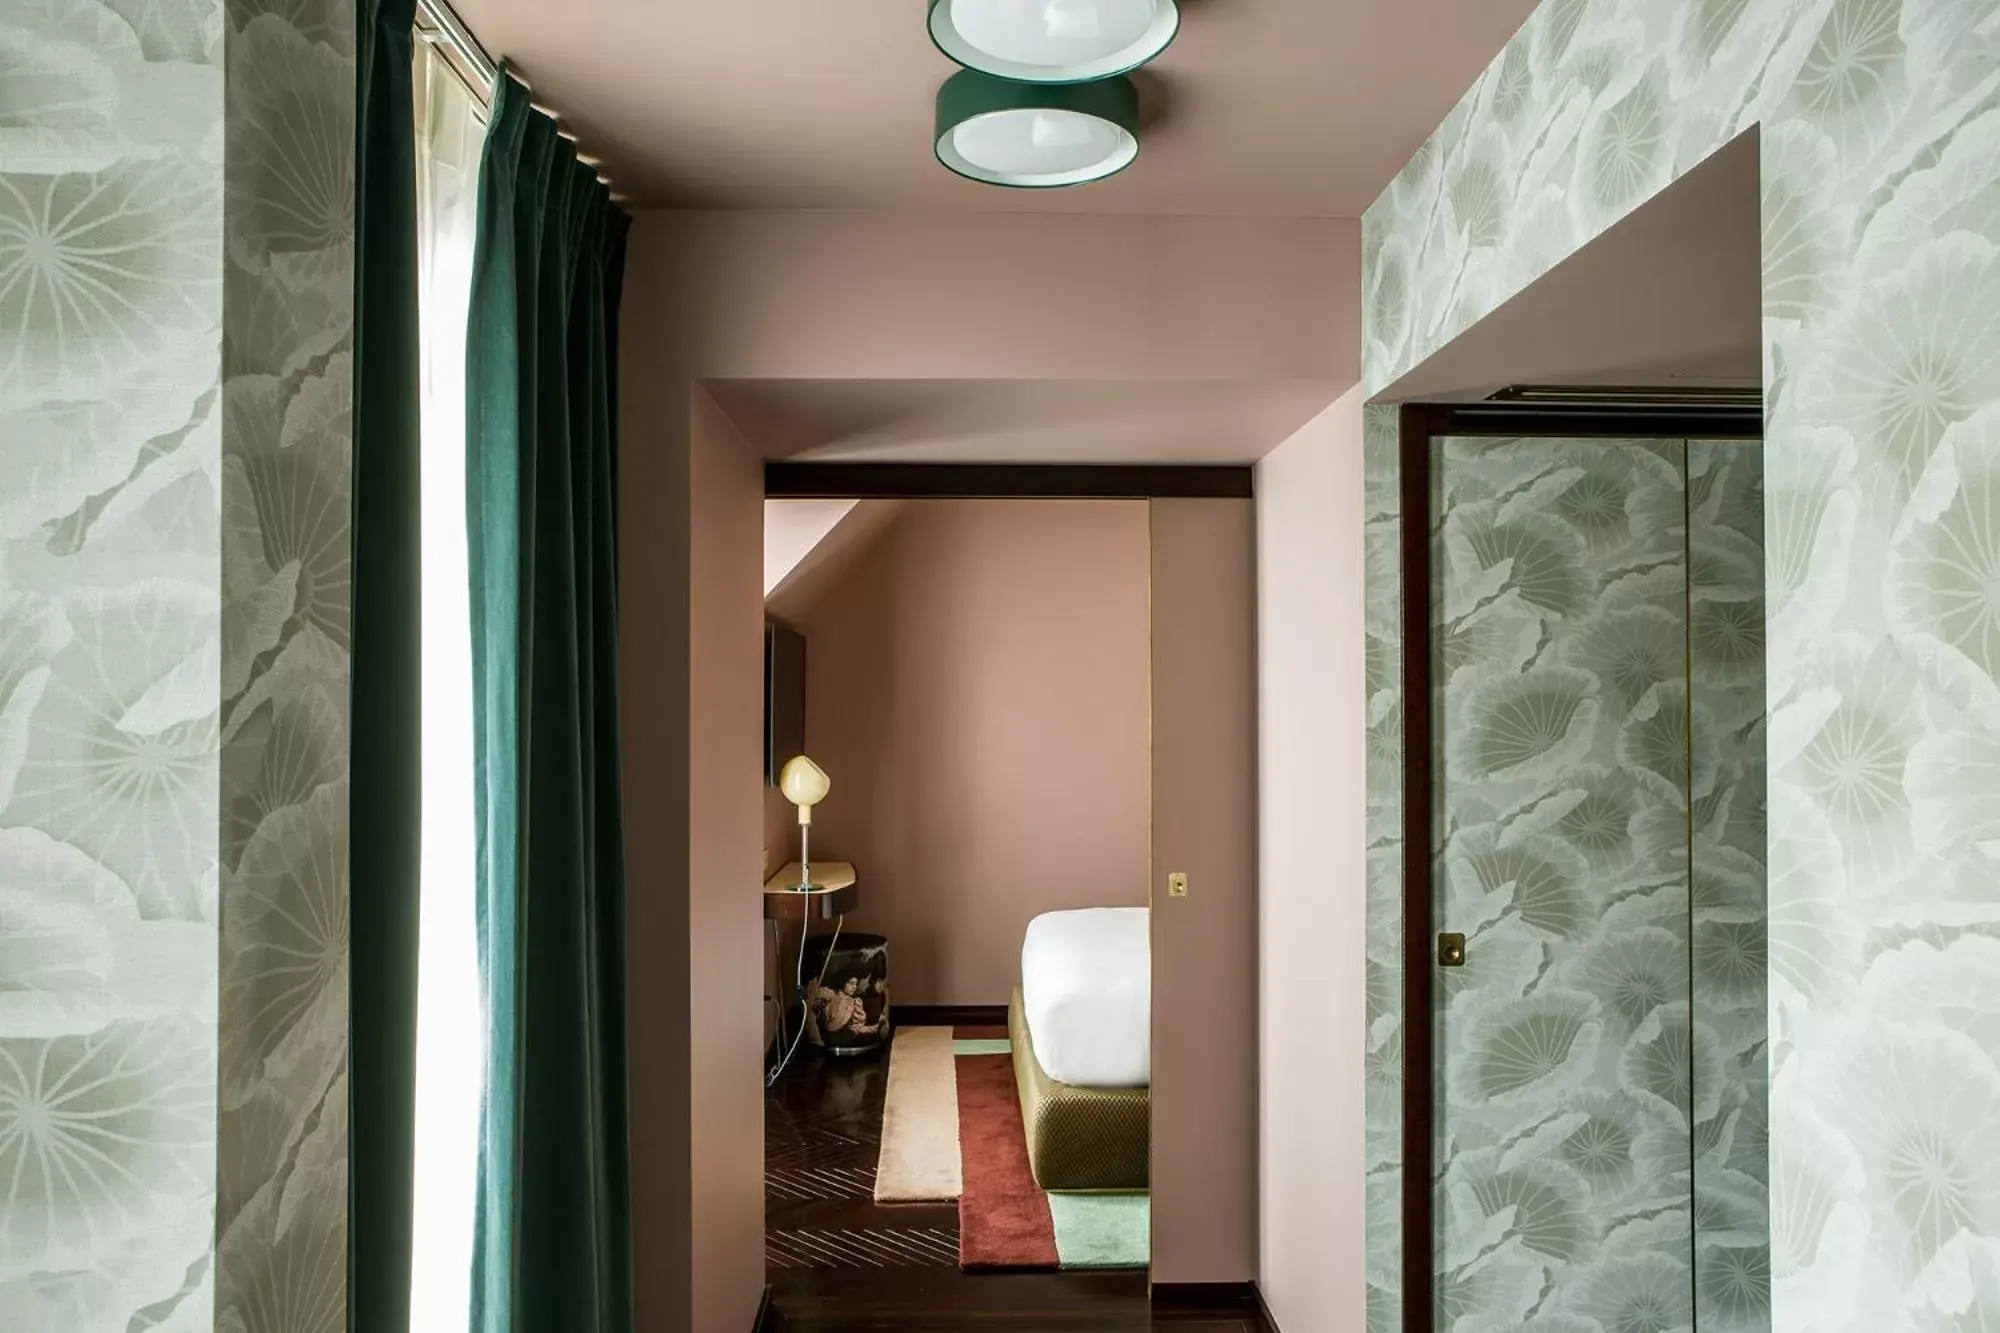 Photo of the whole room, Bathroom in Hôtel du Rond-point des Champs-Élysées - Esprit de France